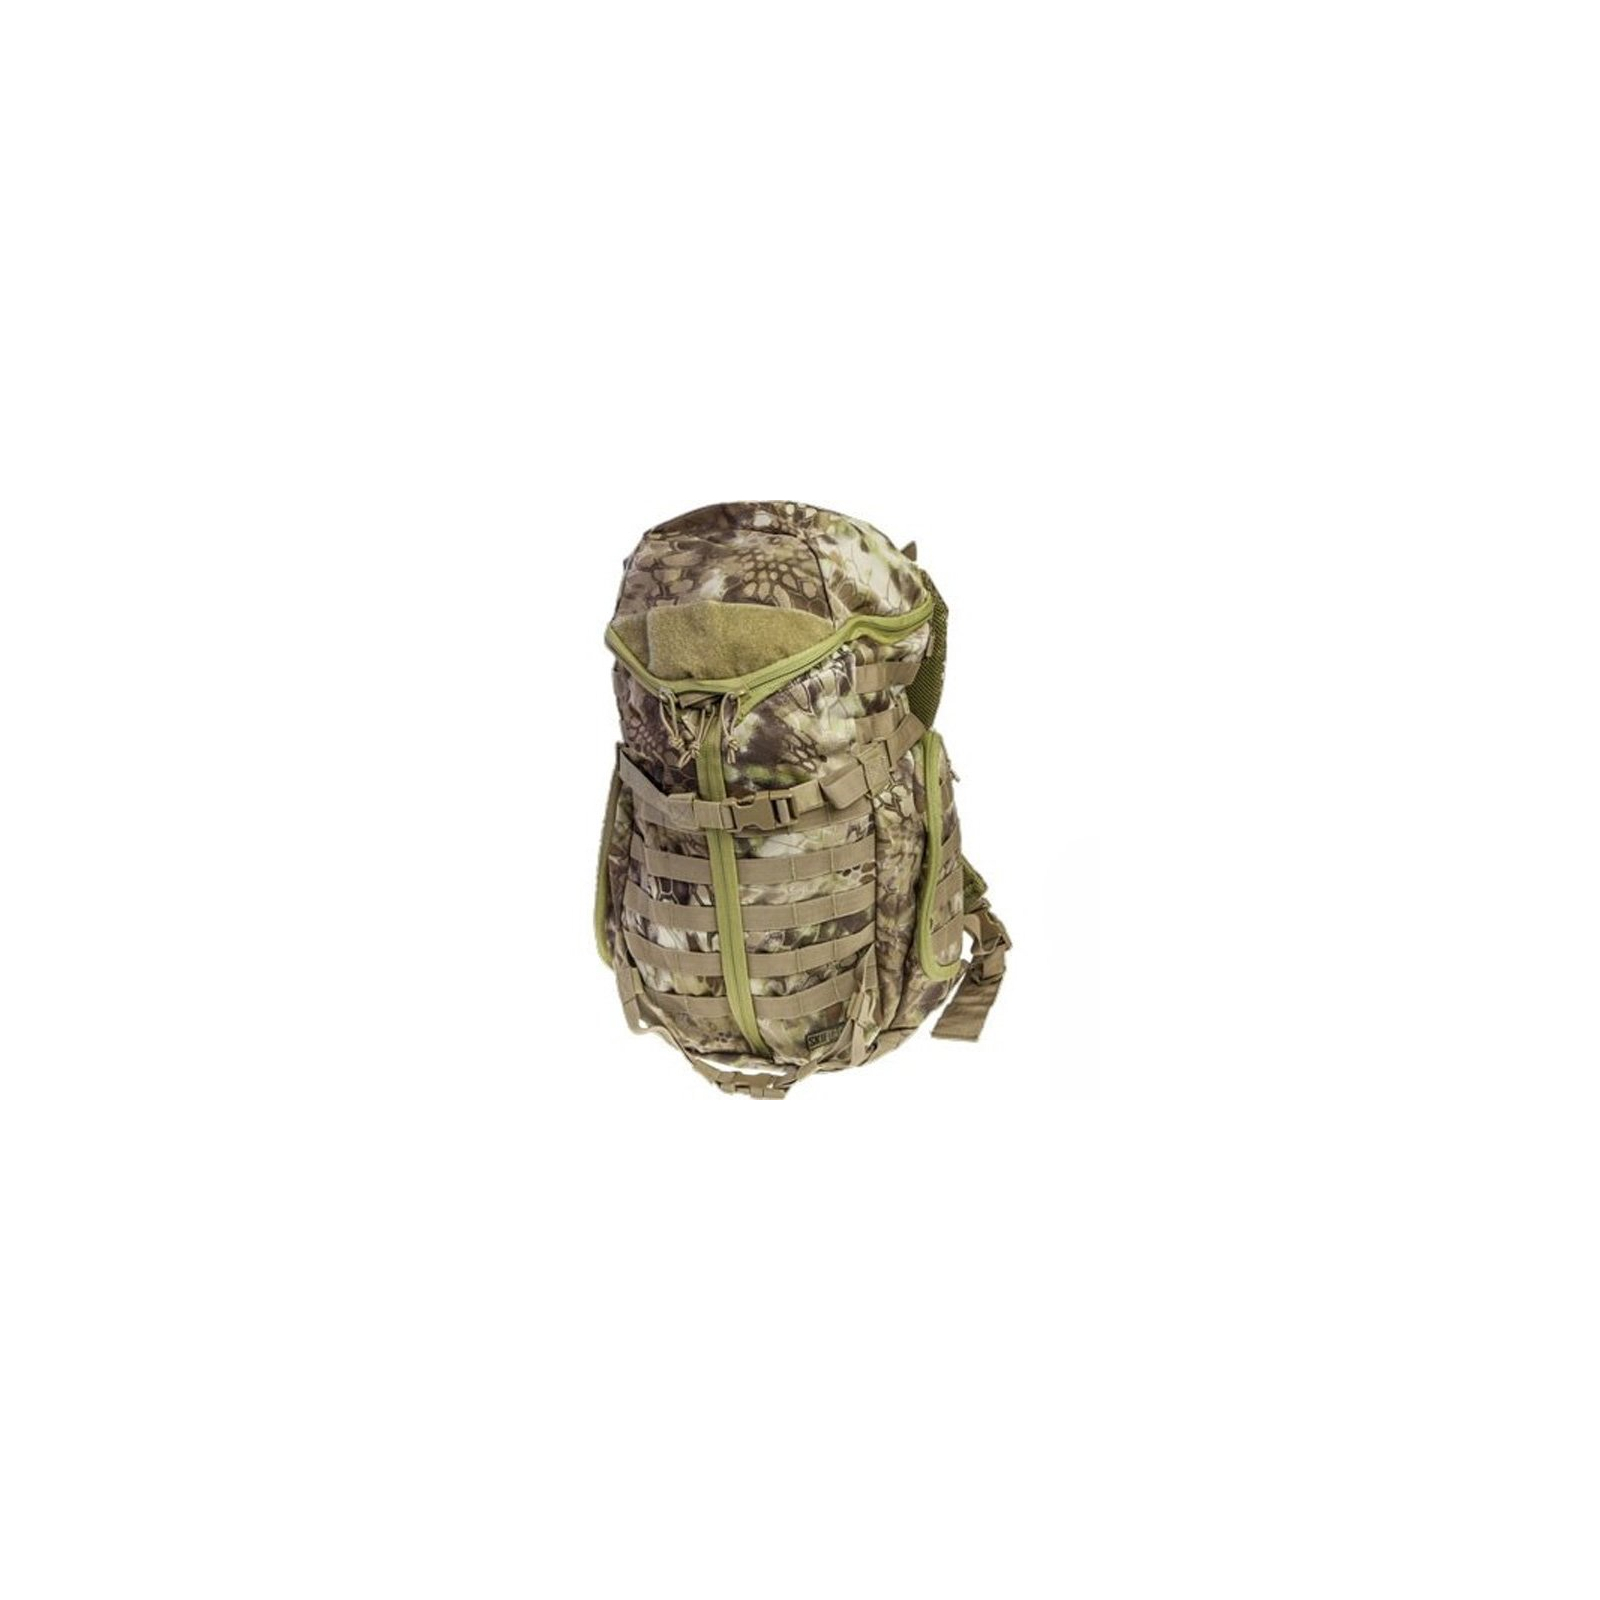 Рюкзак туристический Skif Tac тактический штурмовой 35 литров kryptek khaki (GB0131-KKH)